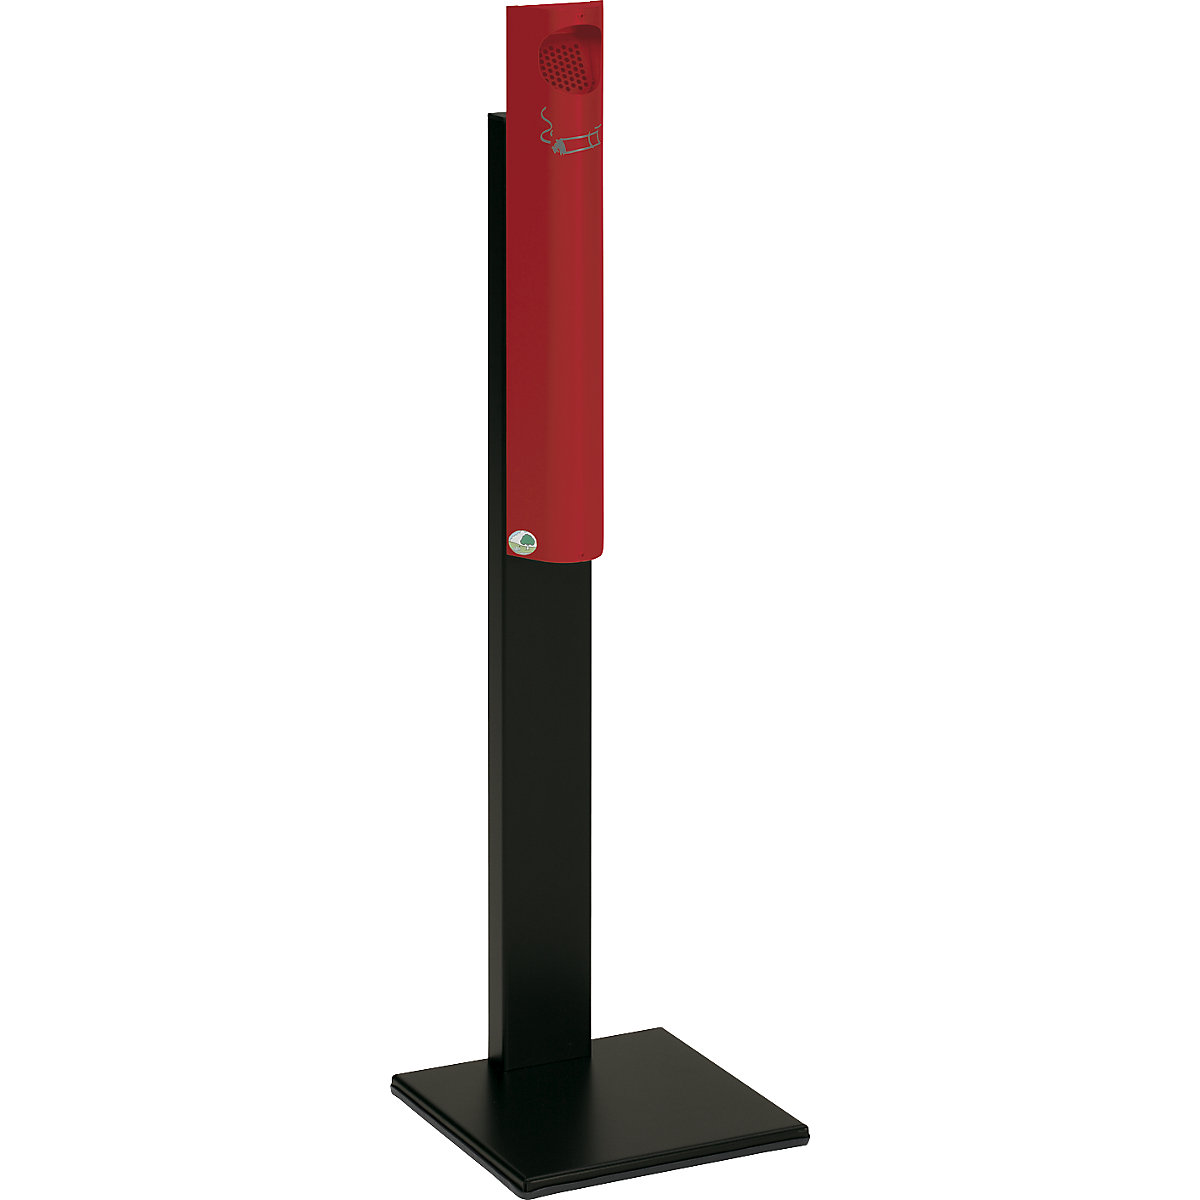 VAR – Volně stojící popelník, ocelový plech, v x š x h 1250 x 310 x 310 mm, ohnivě červená